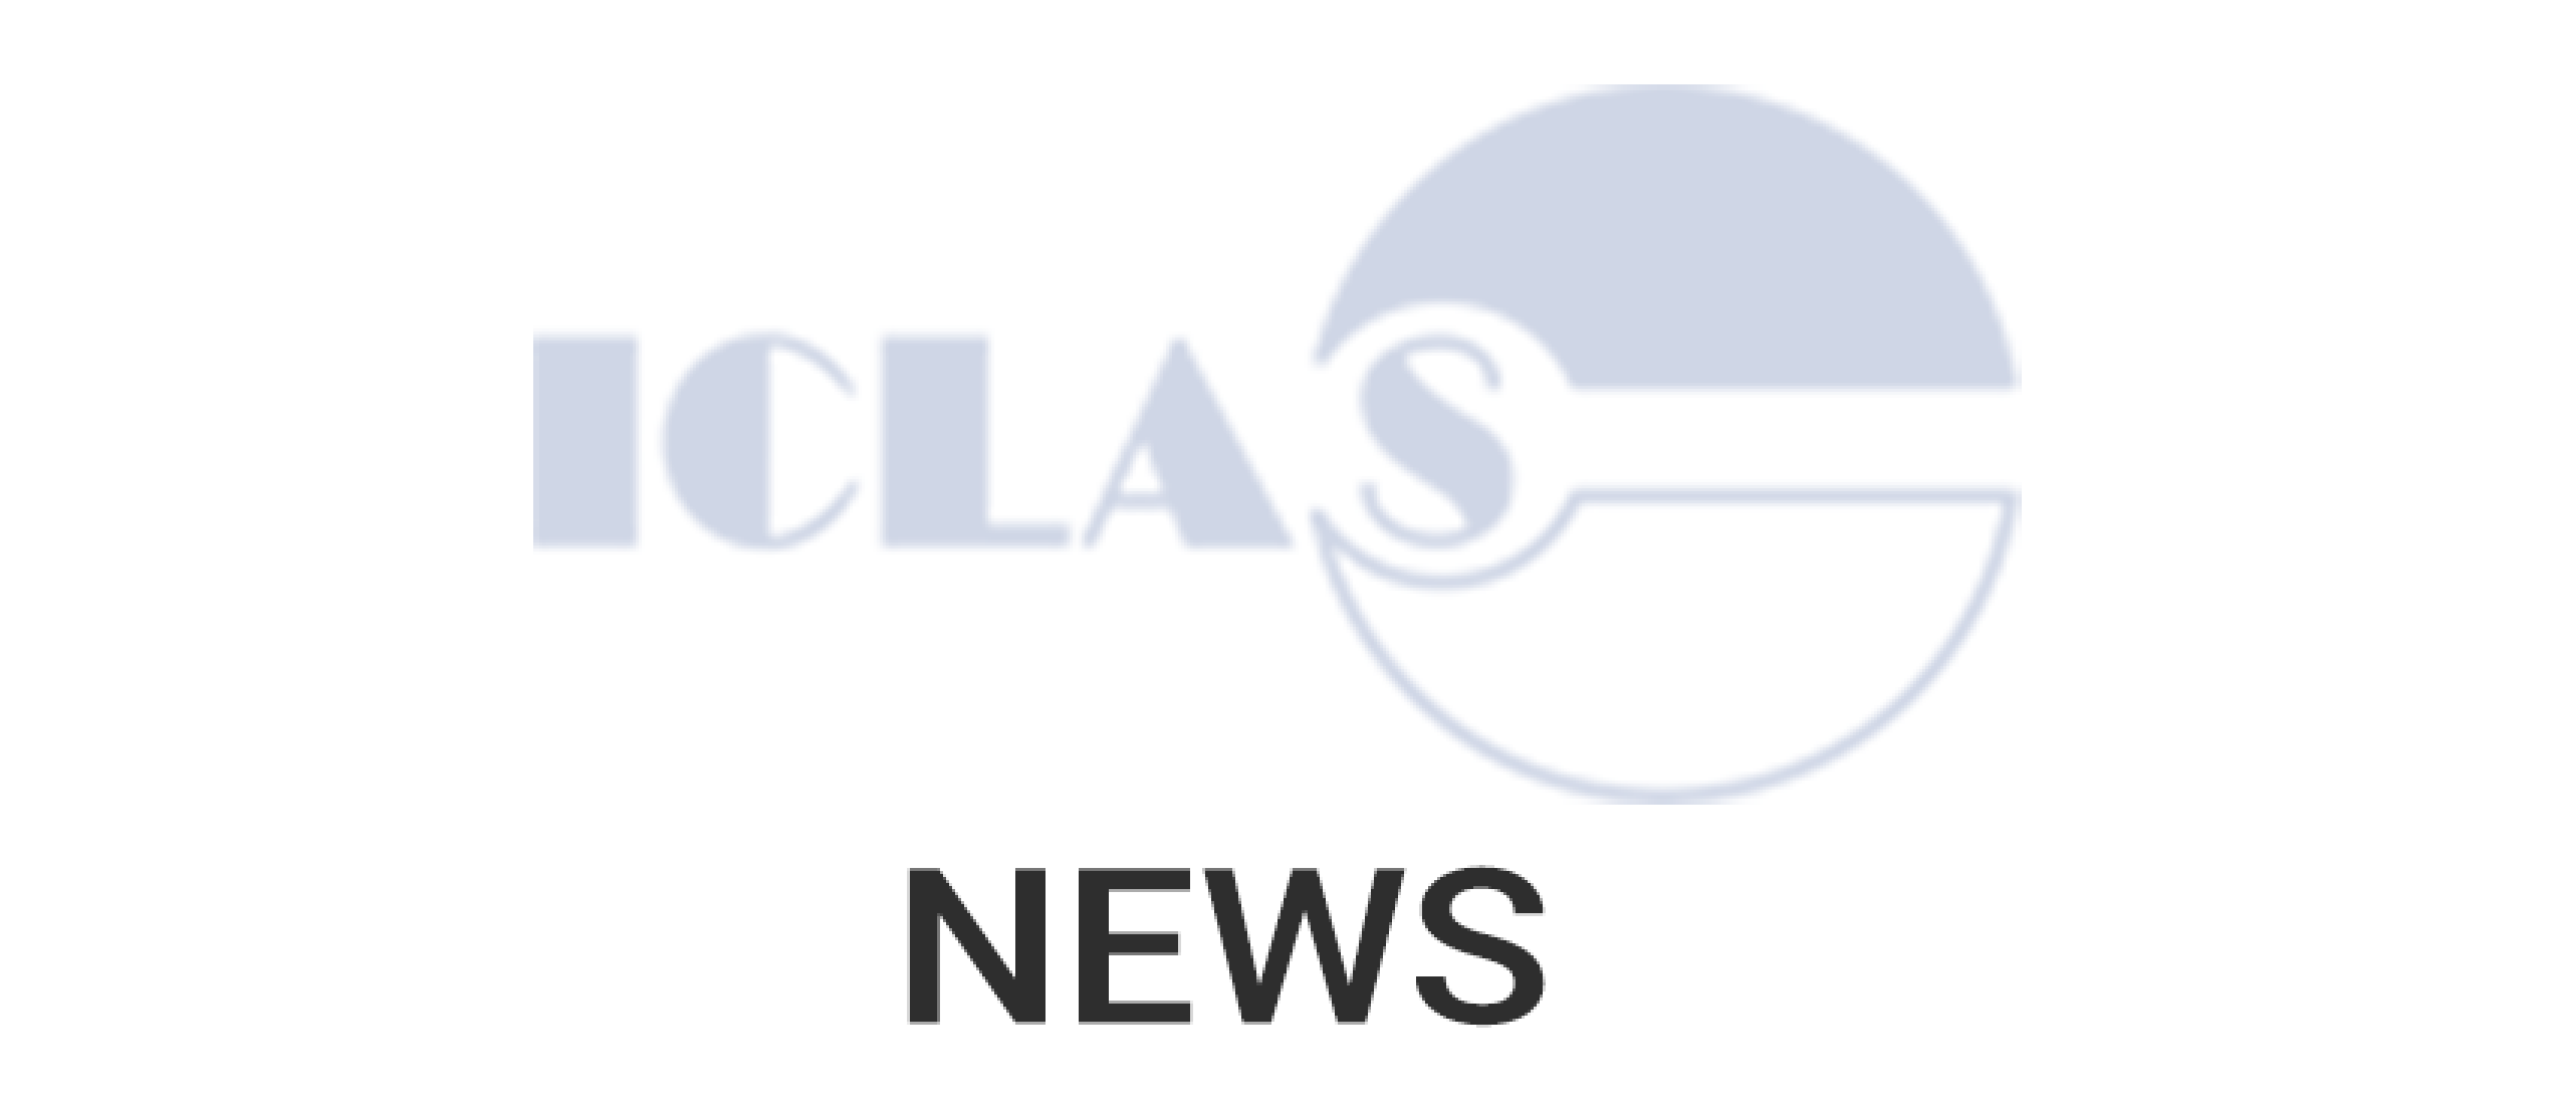 ICLAS News Report April 2022